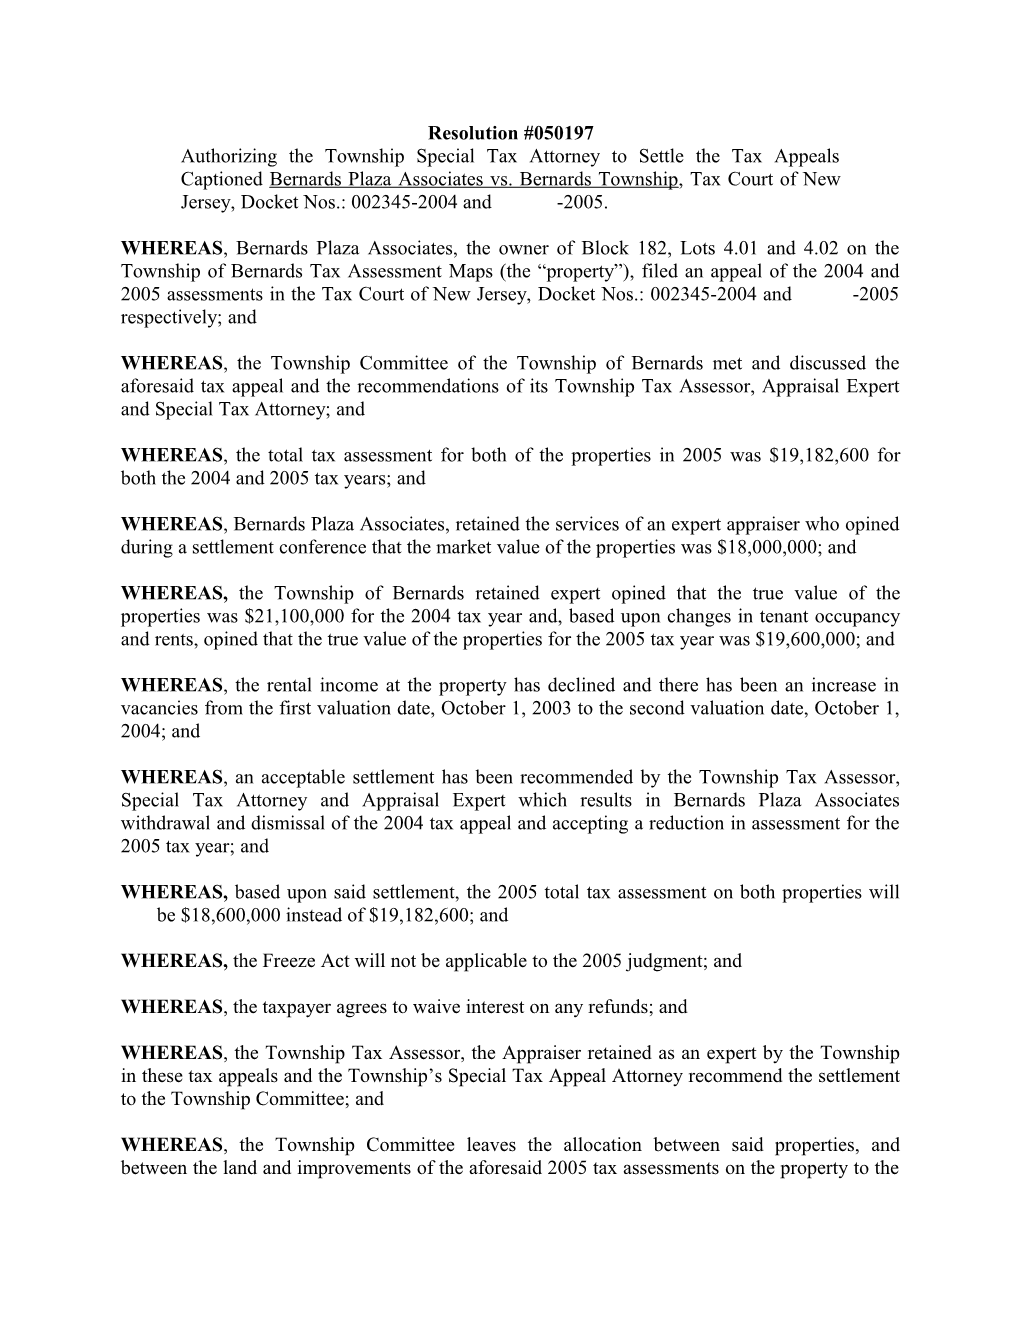 Resolution Authorizing Settlement-Bernards Plaza (A0354710;1)